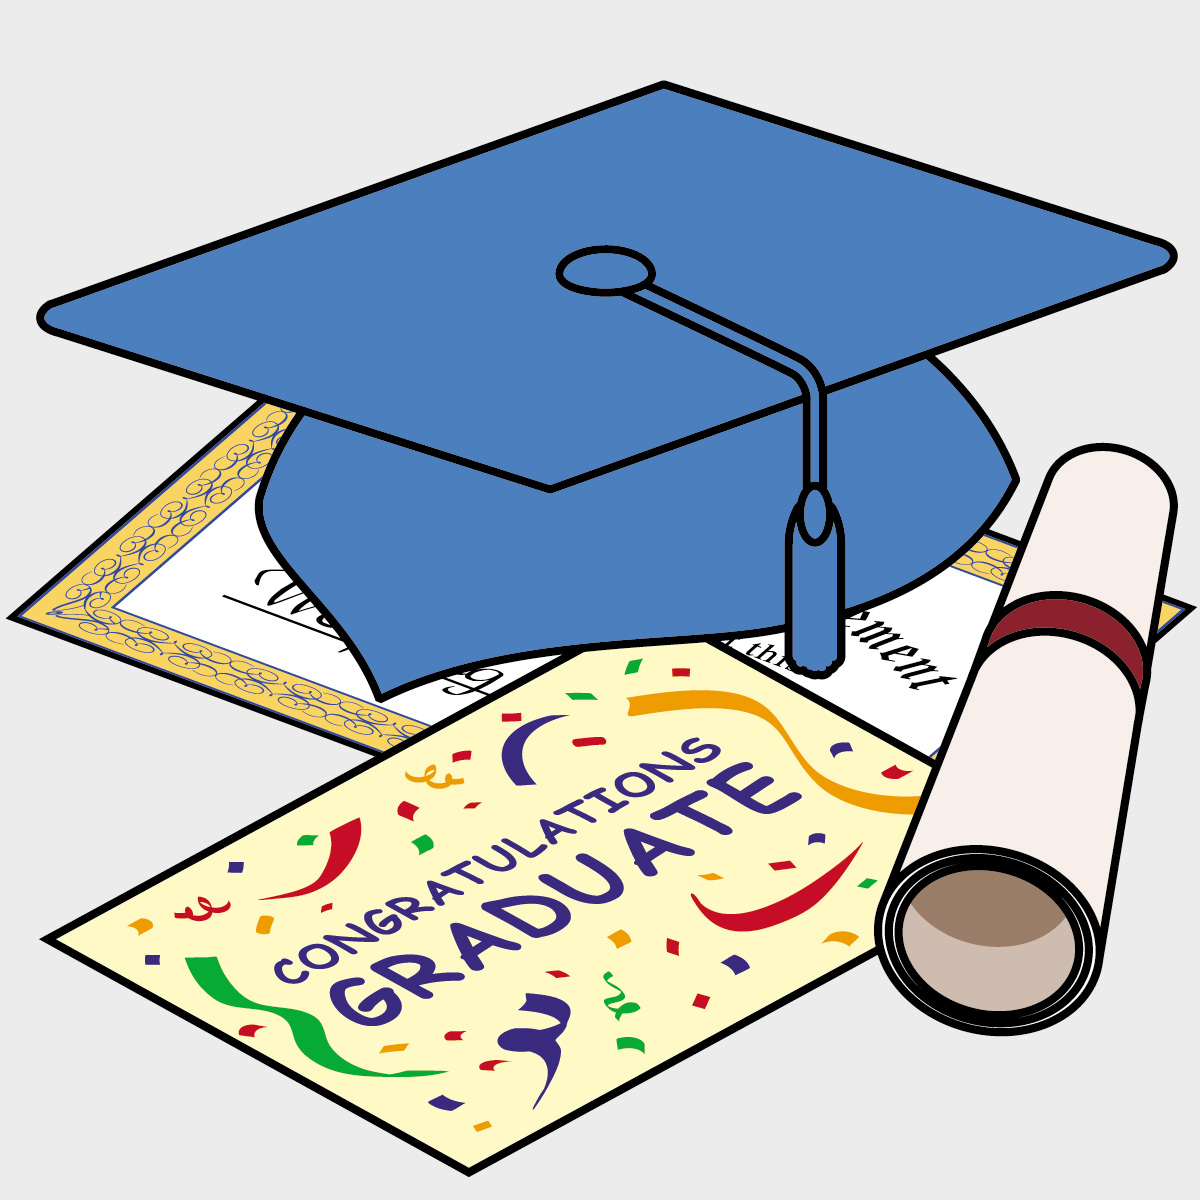 Graduation Symbols Images | Free Download Clip Art | Free Clip Art ...